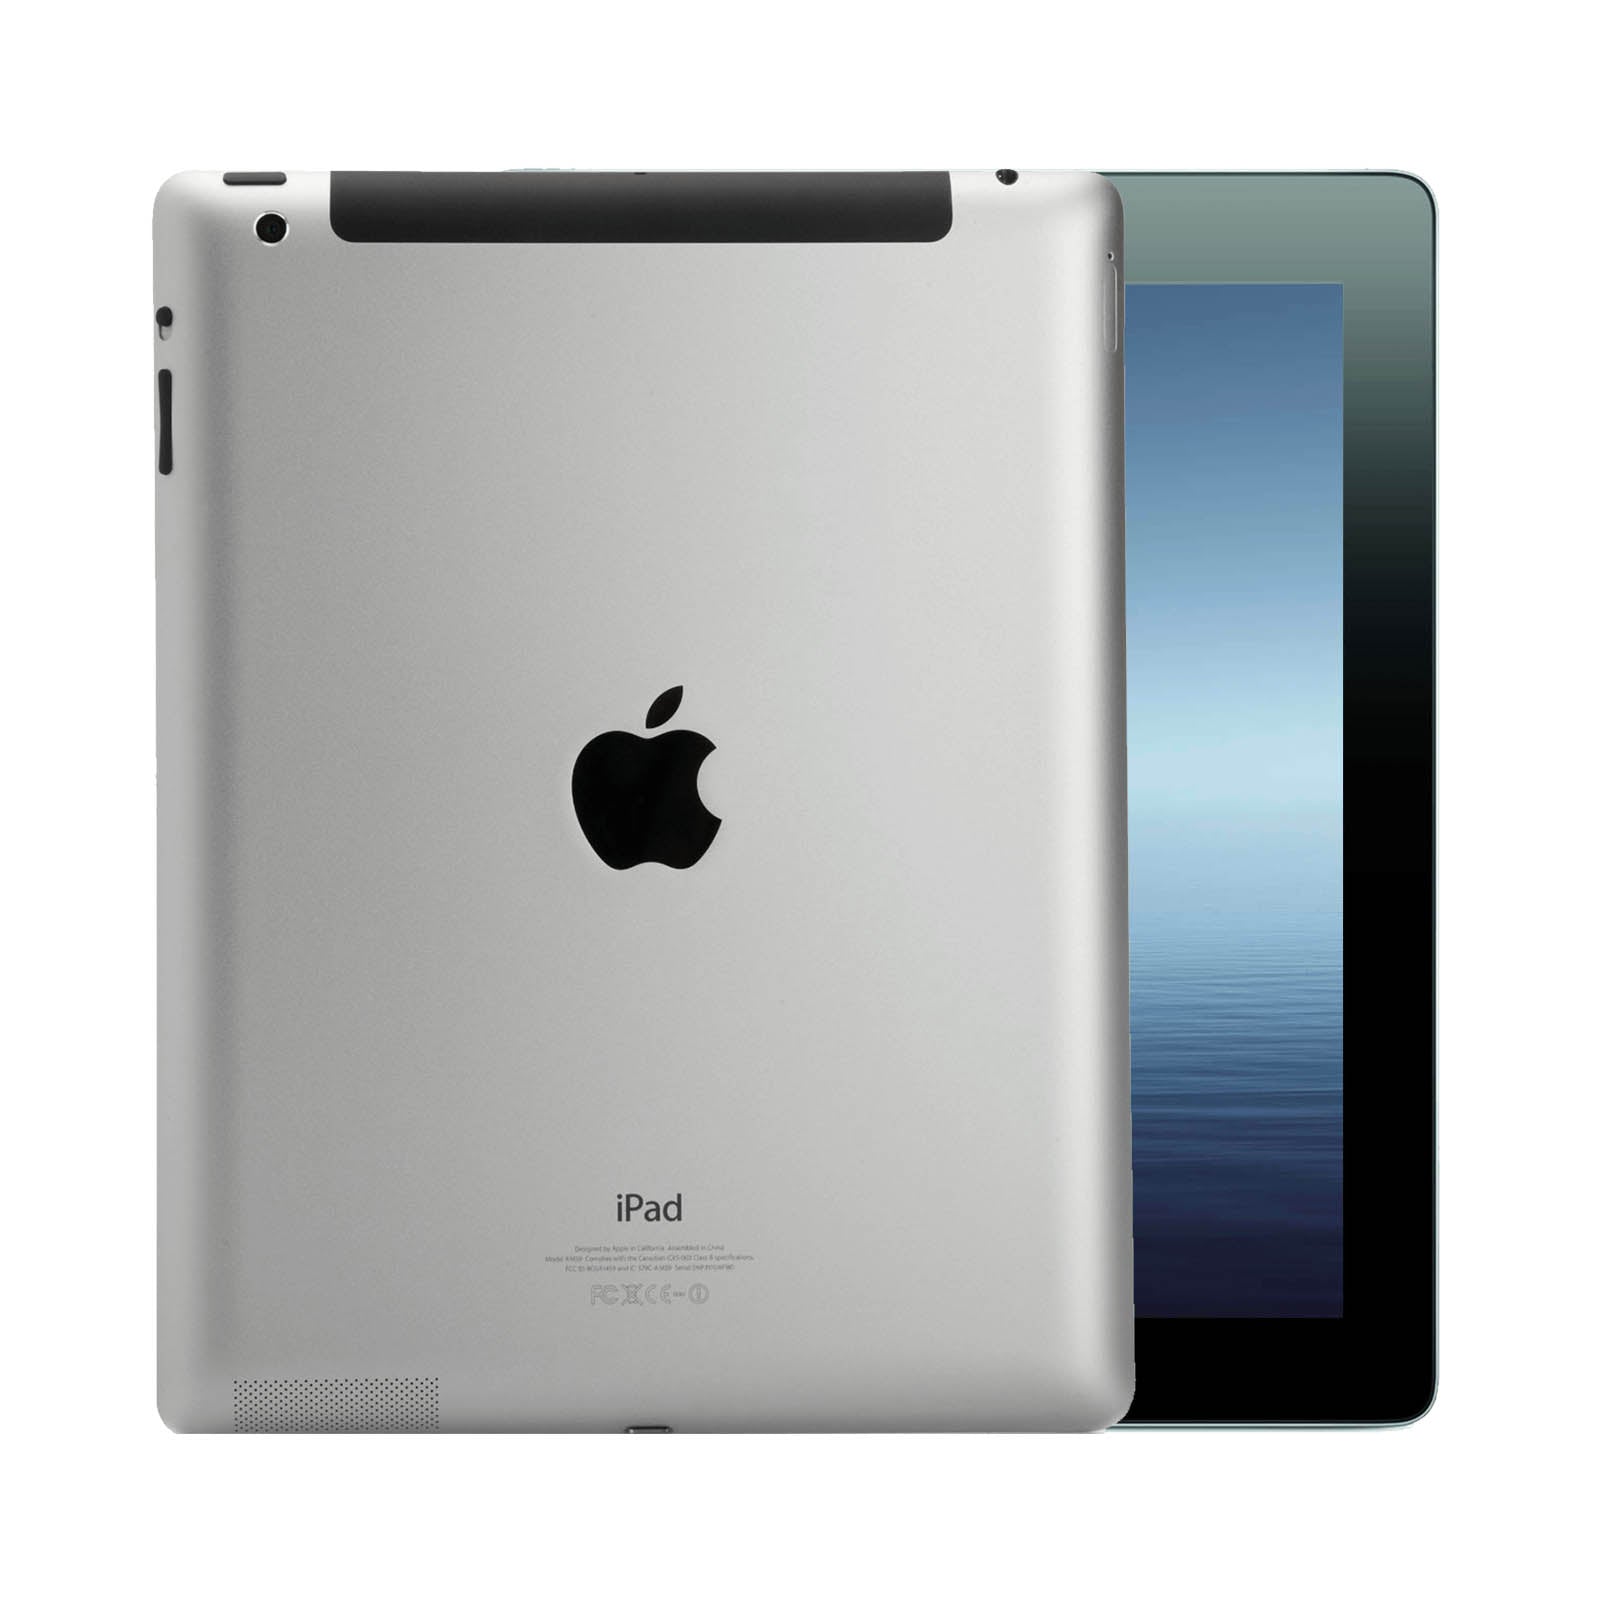 Apple iPad 3 32GB Black Very Good - Unlocked